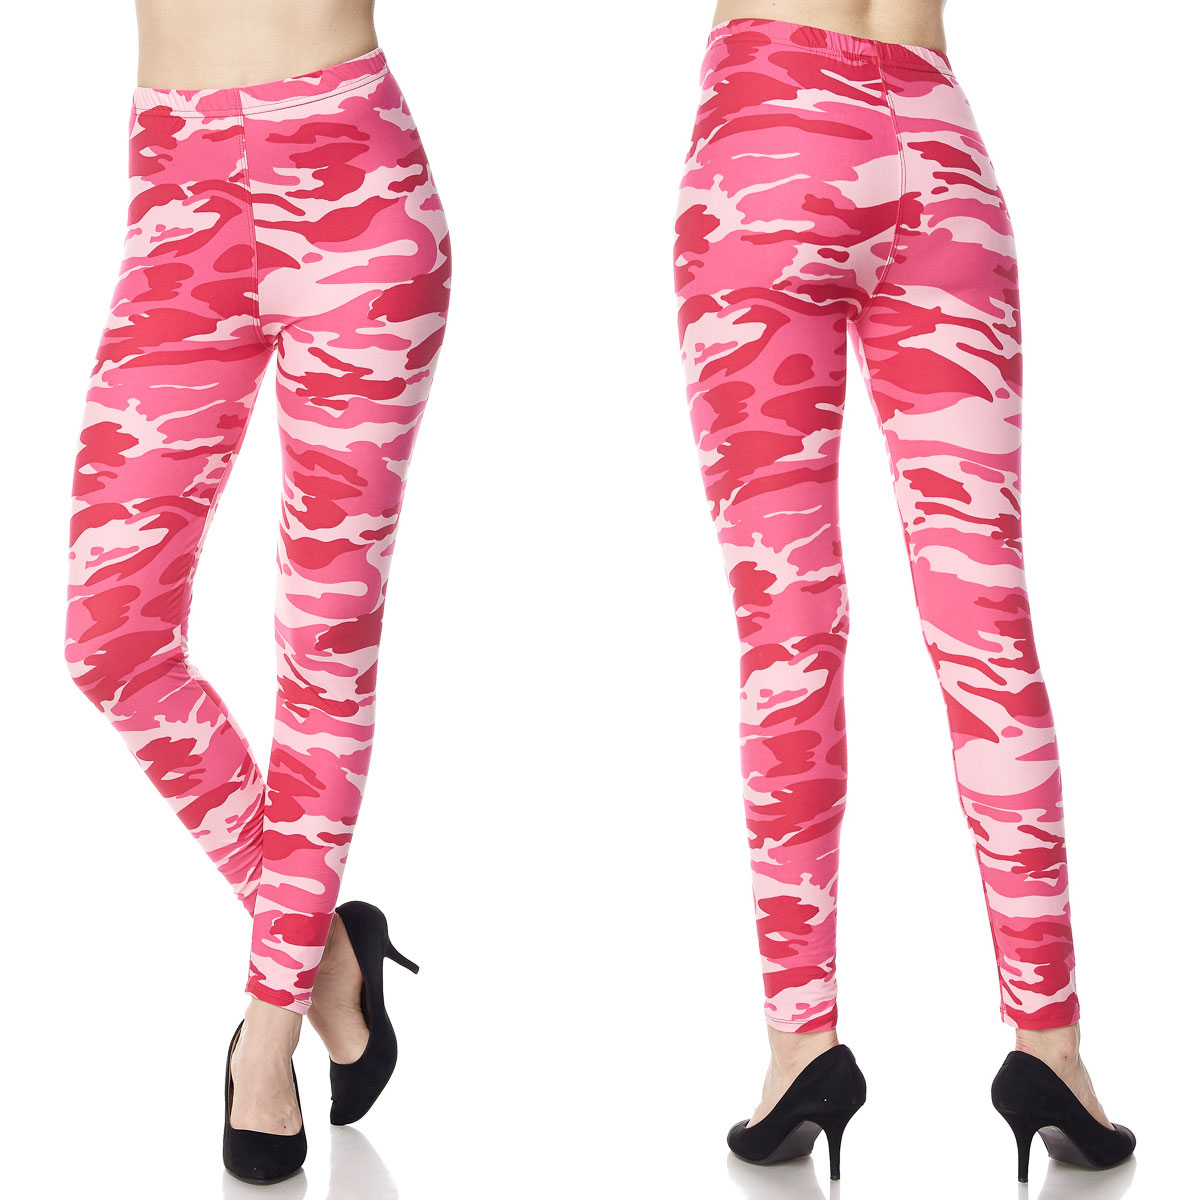 F120 Camouflage Pink Brushed Fiber Leggings - Ankle Length Prints